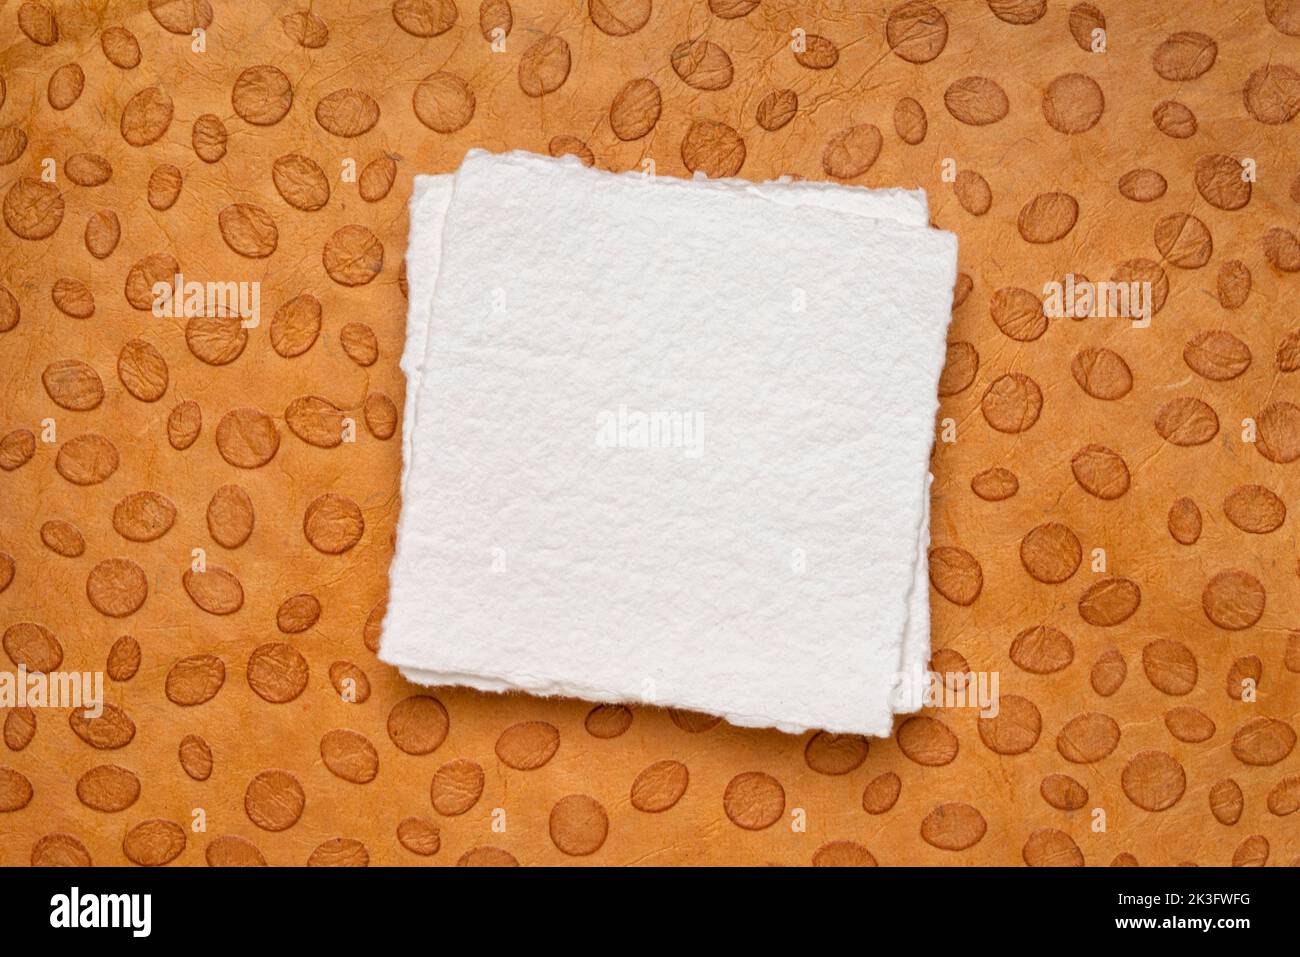 Petite feuille carrée de papier Khadi blanc vierge contre papier orange à motif de points Banque D'Images